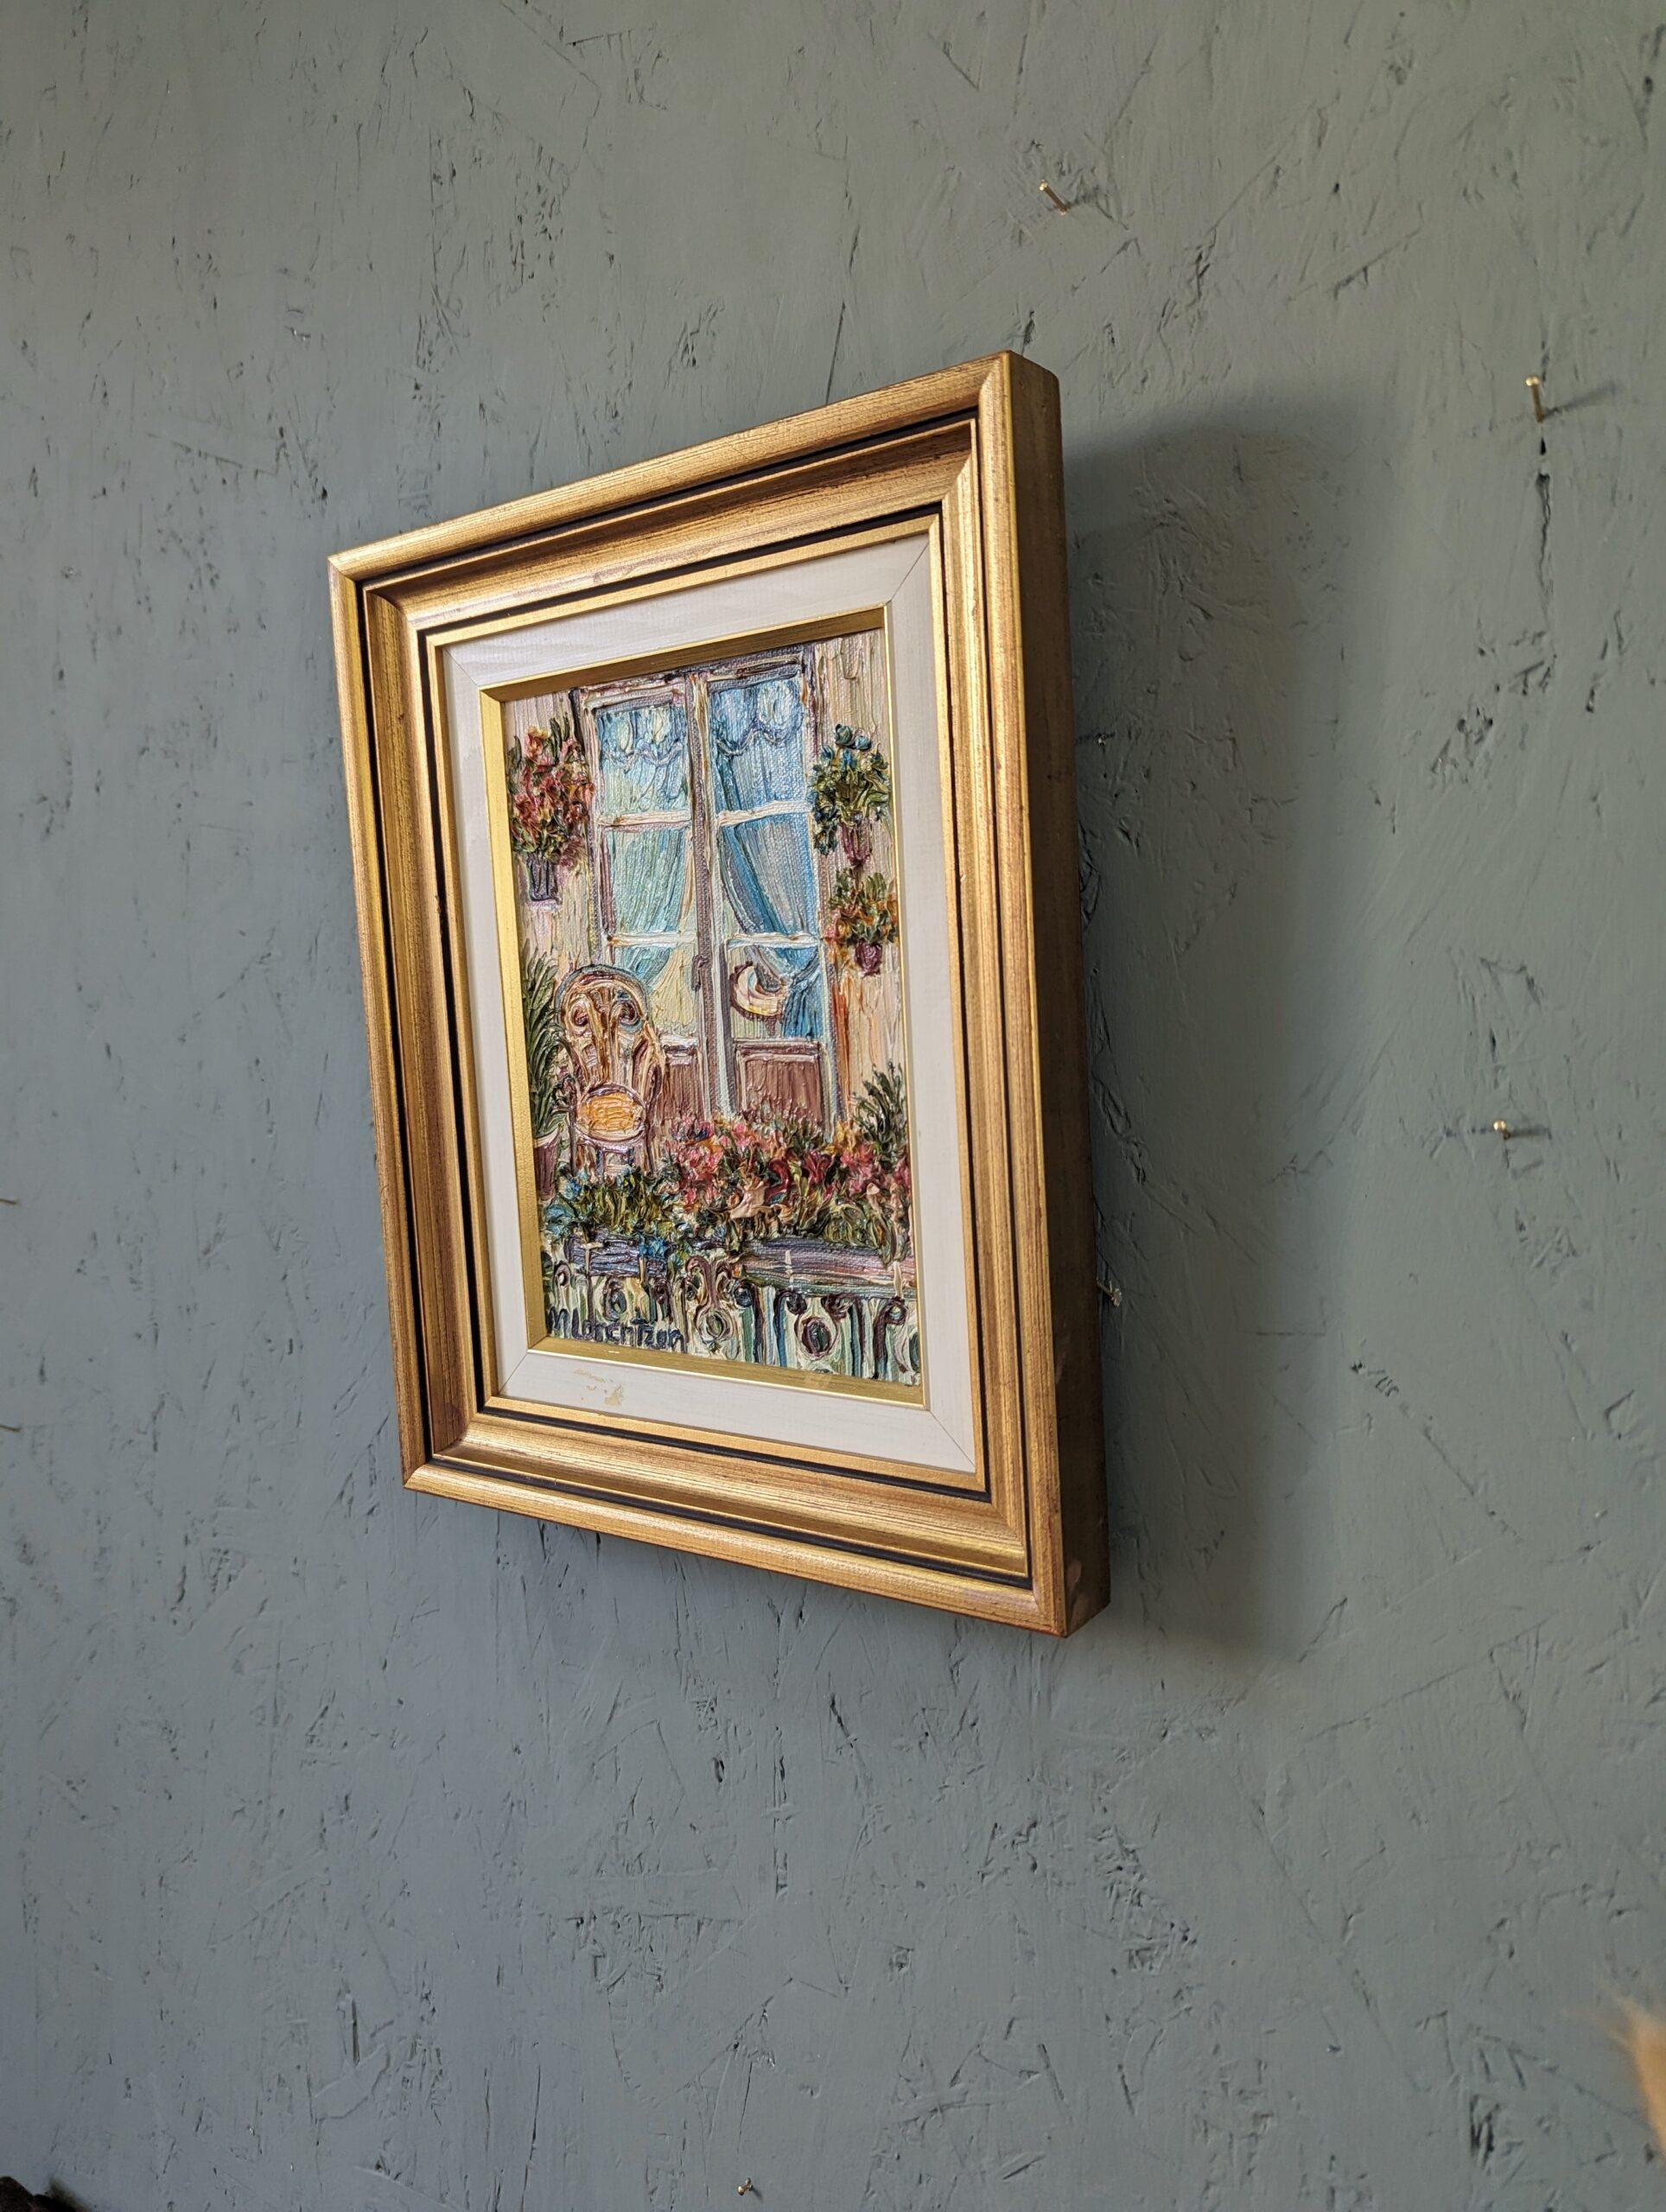 BALCONY GARDEN
Taille : 32 x 26 cm (cadre compris)
Huile sur toile

Une peinture du milieu du siècle, richement texturée et charmante, exécutée à l'huile sur toile.

La composition, petite mais percutante, présente une vue vivante et pittoresque